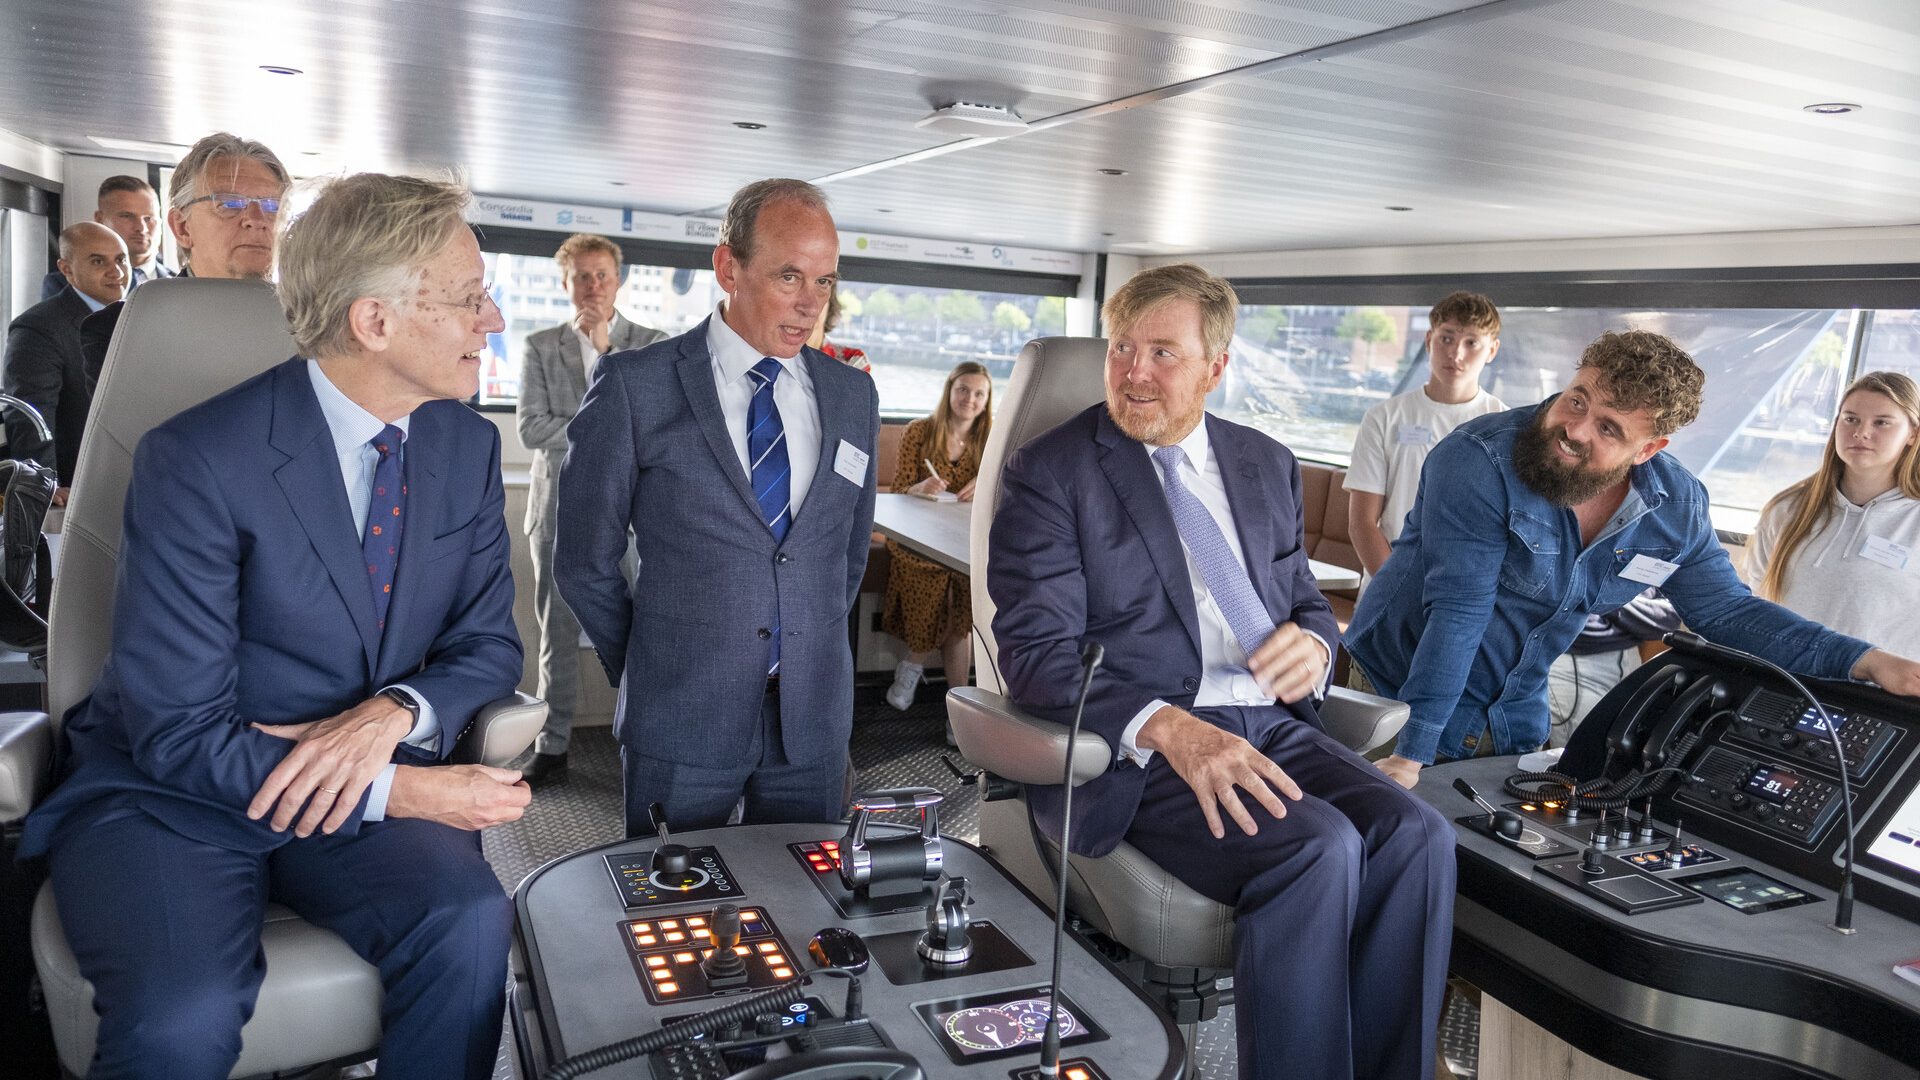 v.l.n.r: Minister Dijkhof, Frits Gronsveld en koning Willem-Alexander